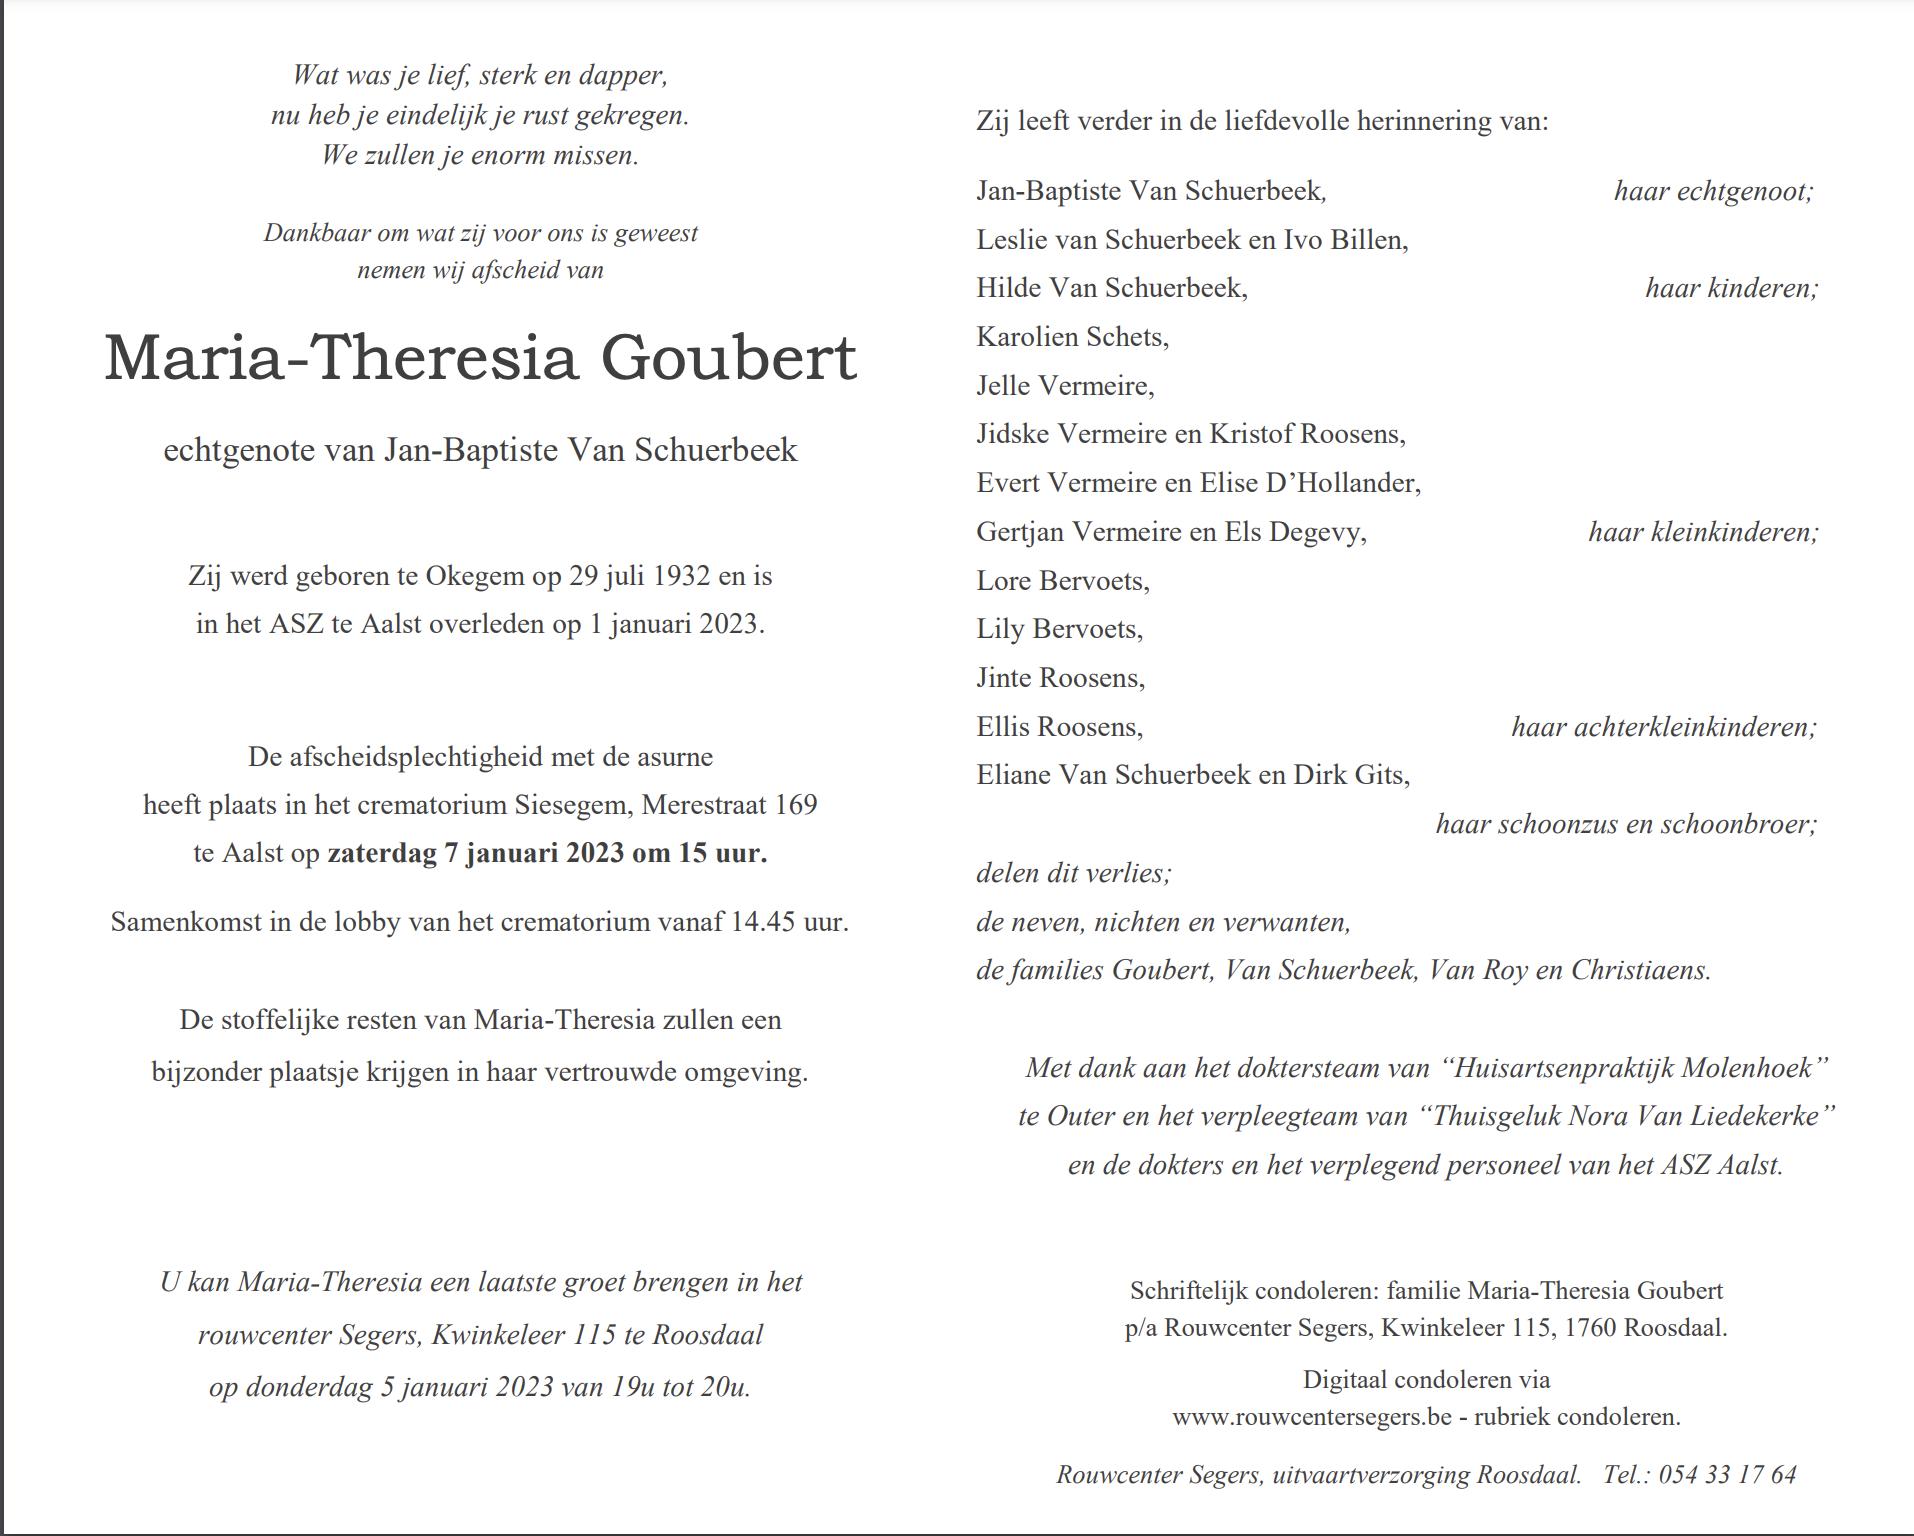 Goubert Maria-Theresia